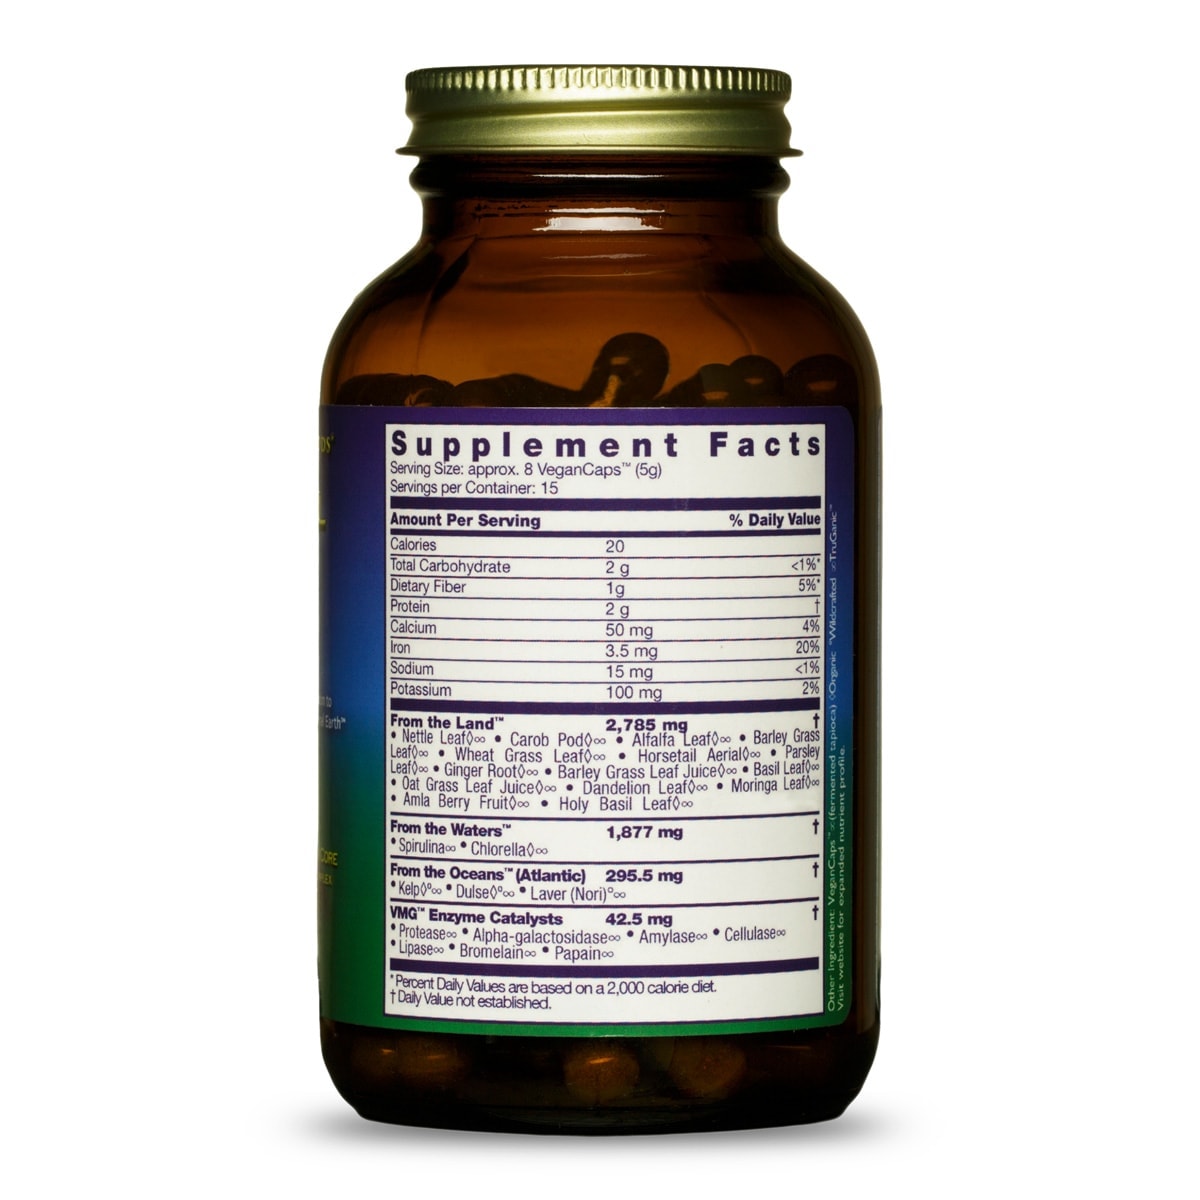 HealthForce SuperFoods - Vitamineral Green - Mélange de boissons pour aliments entiers